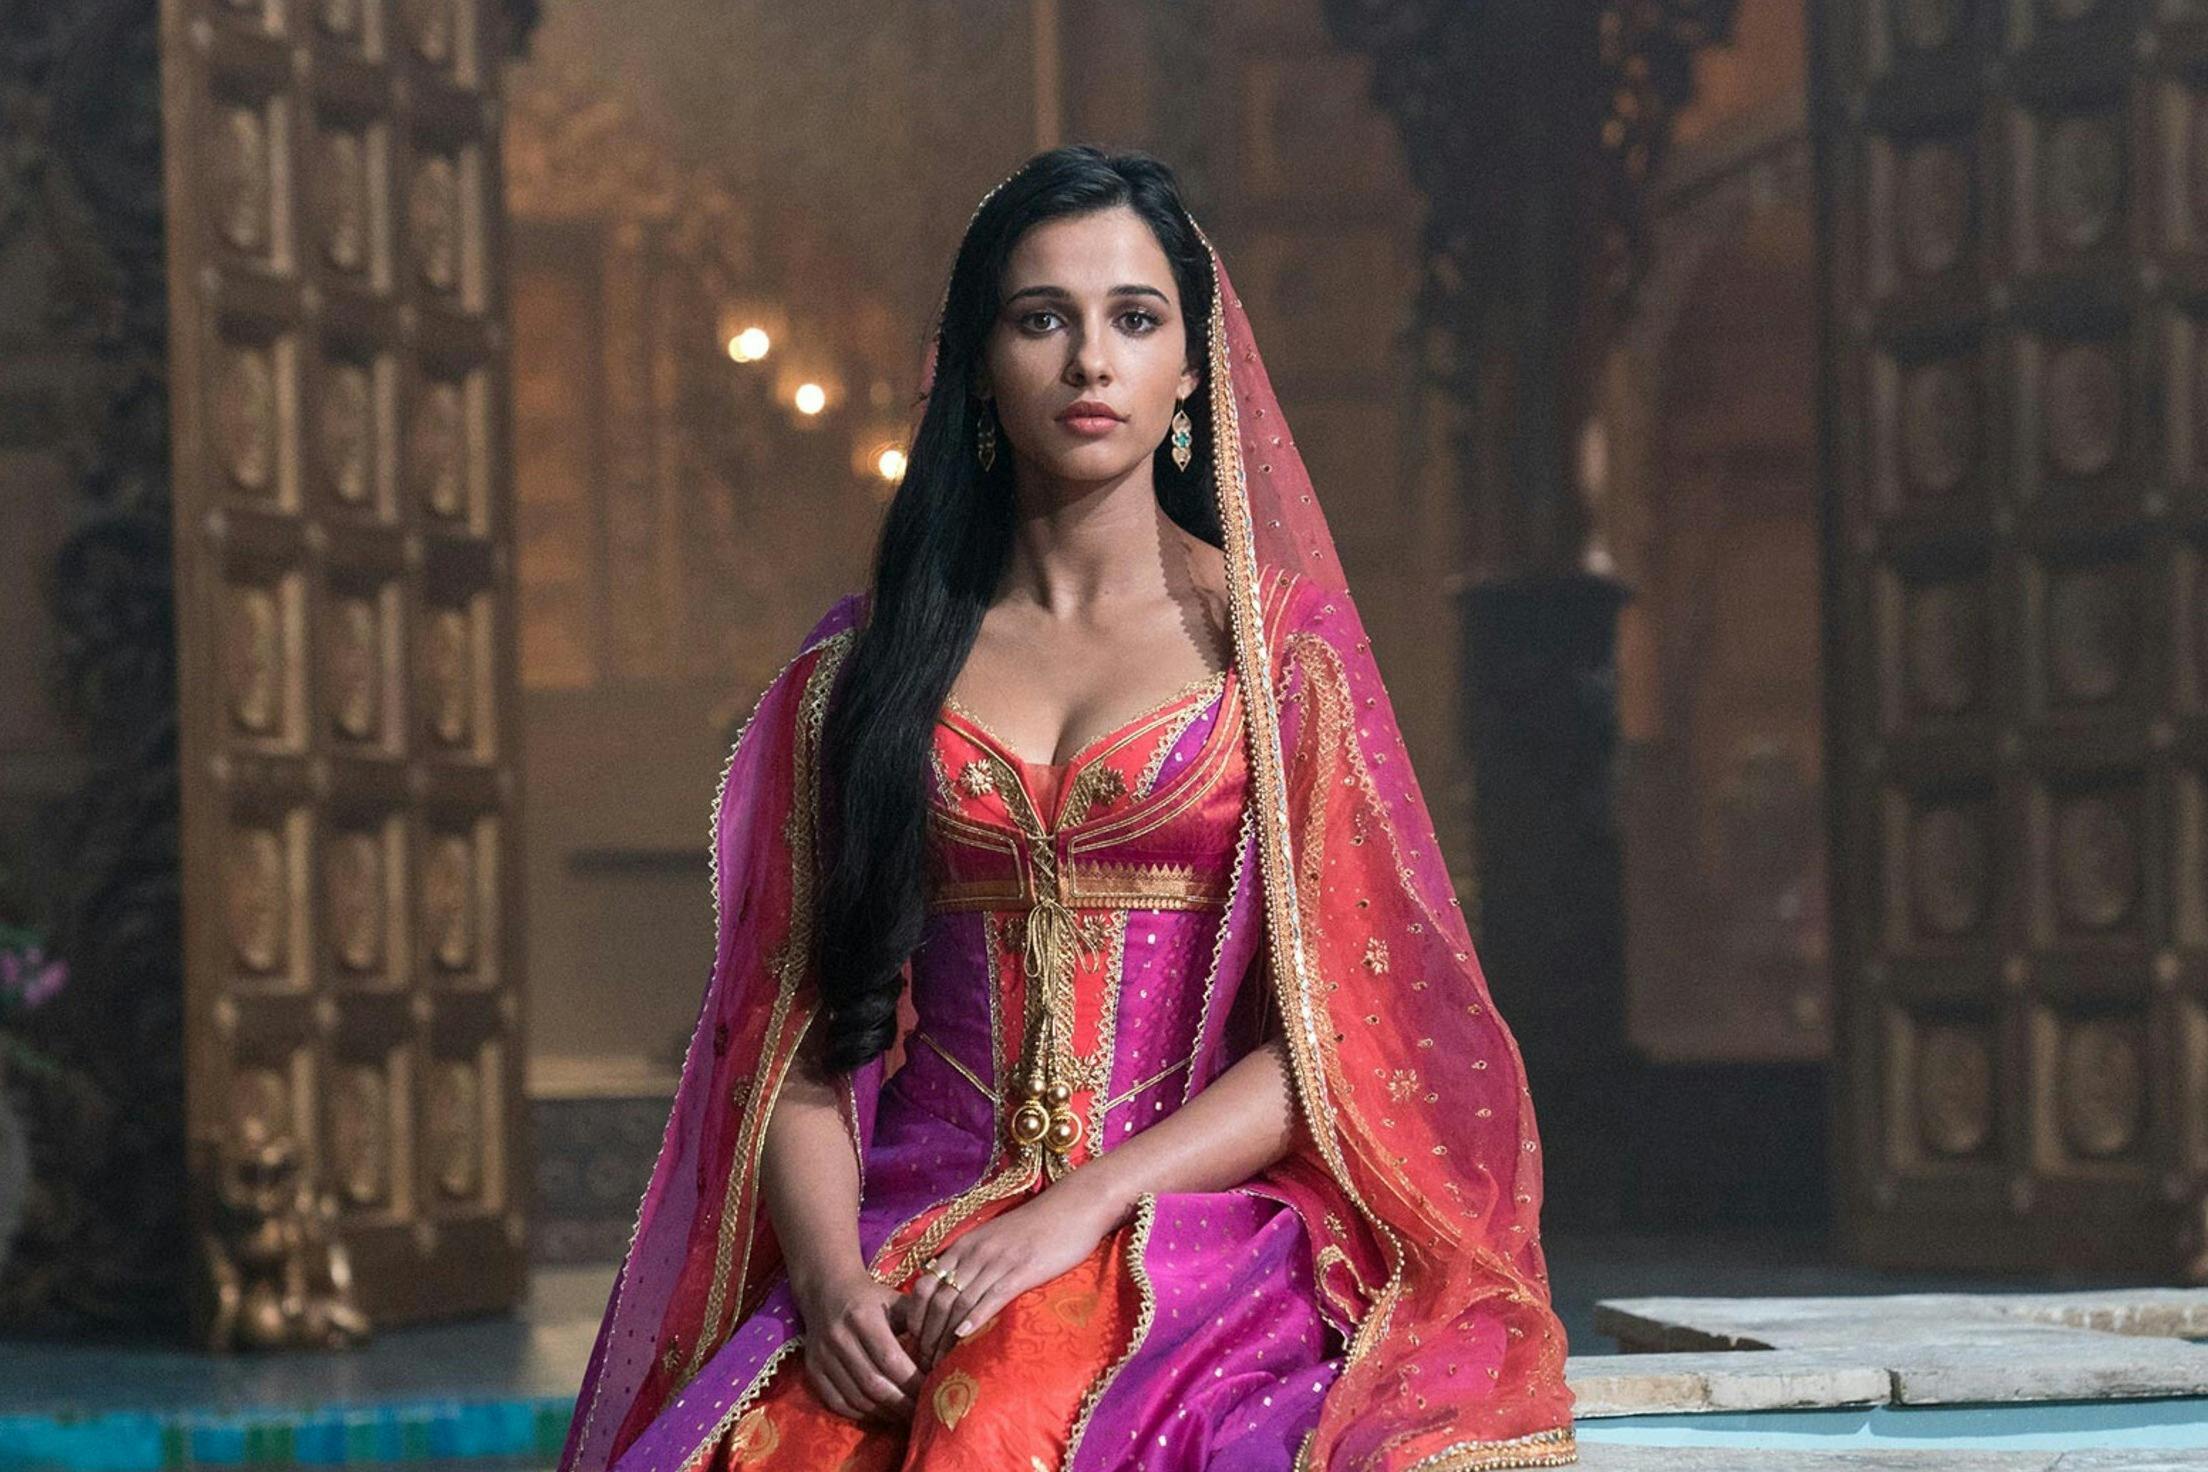 Naomi Scott as Princess Jasmine ("Aladdin" 2019)